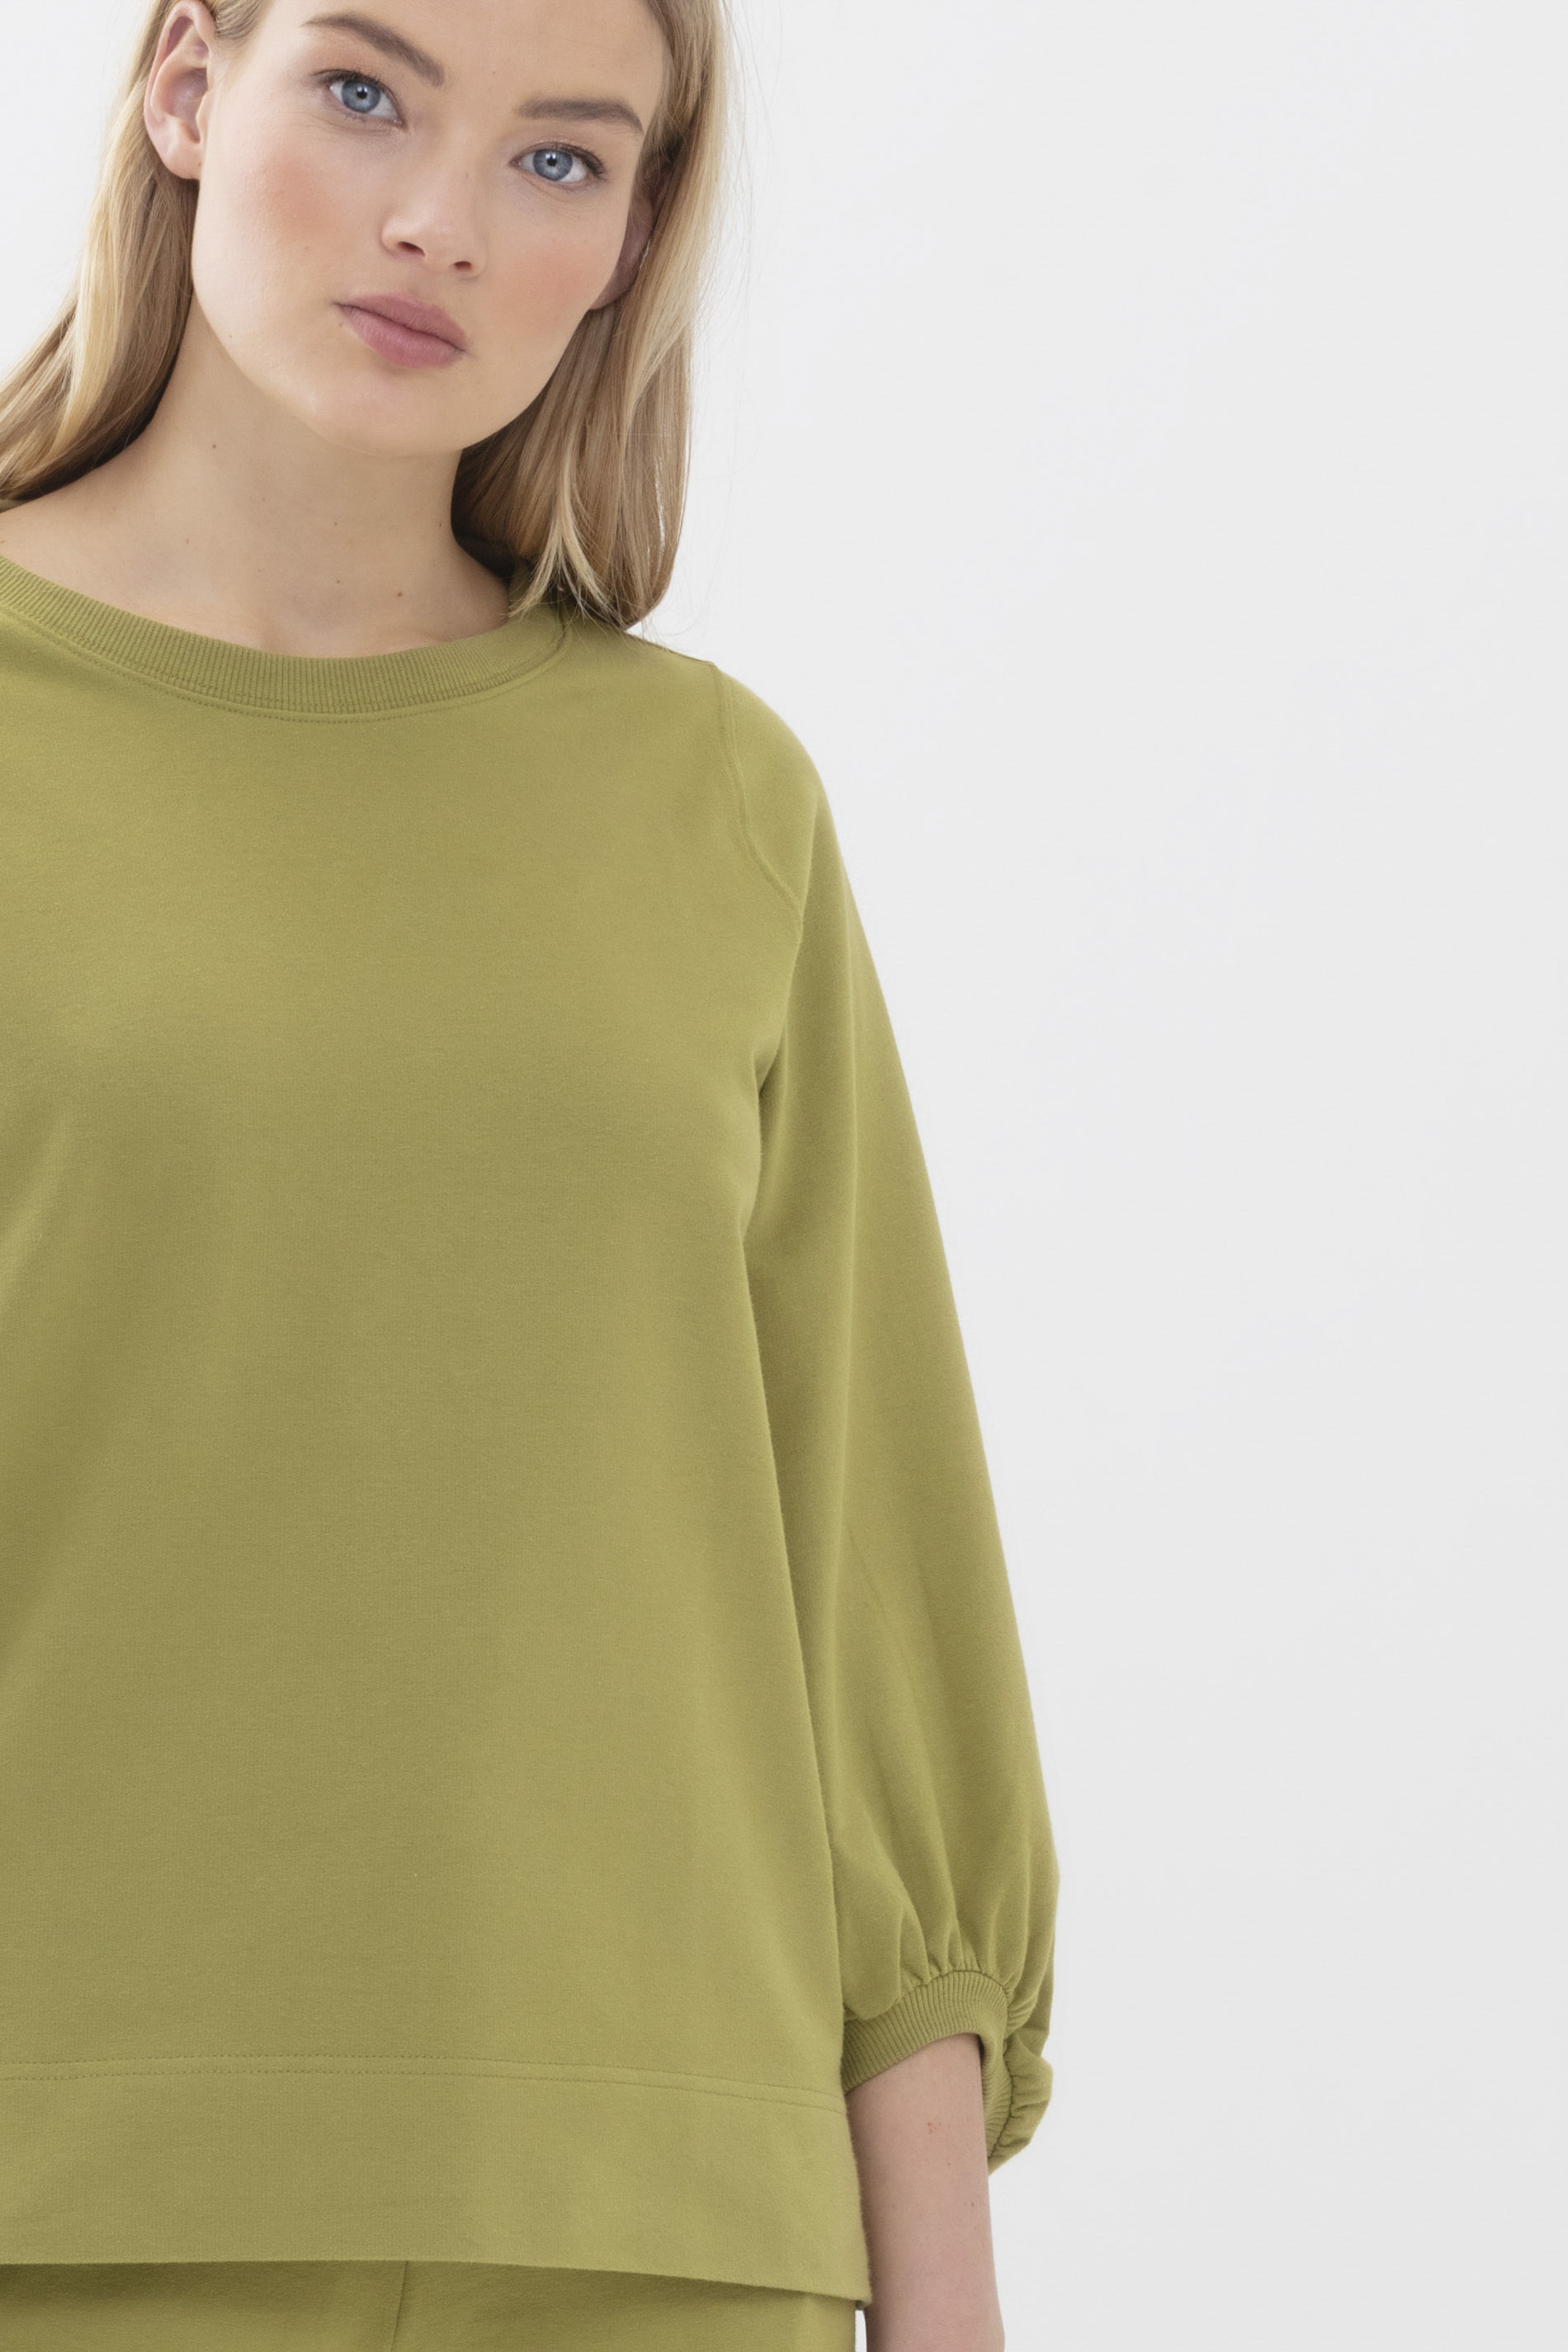 Sweater Tuscan Green Serie Mischa Detailansicht 01 | mey®